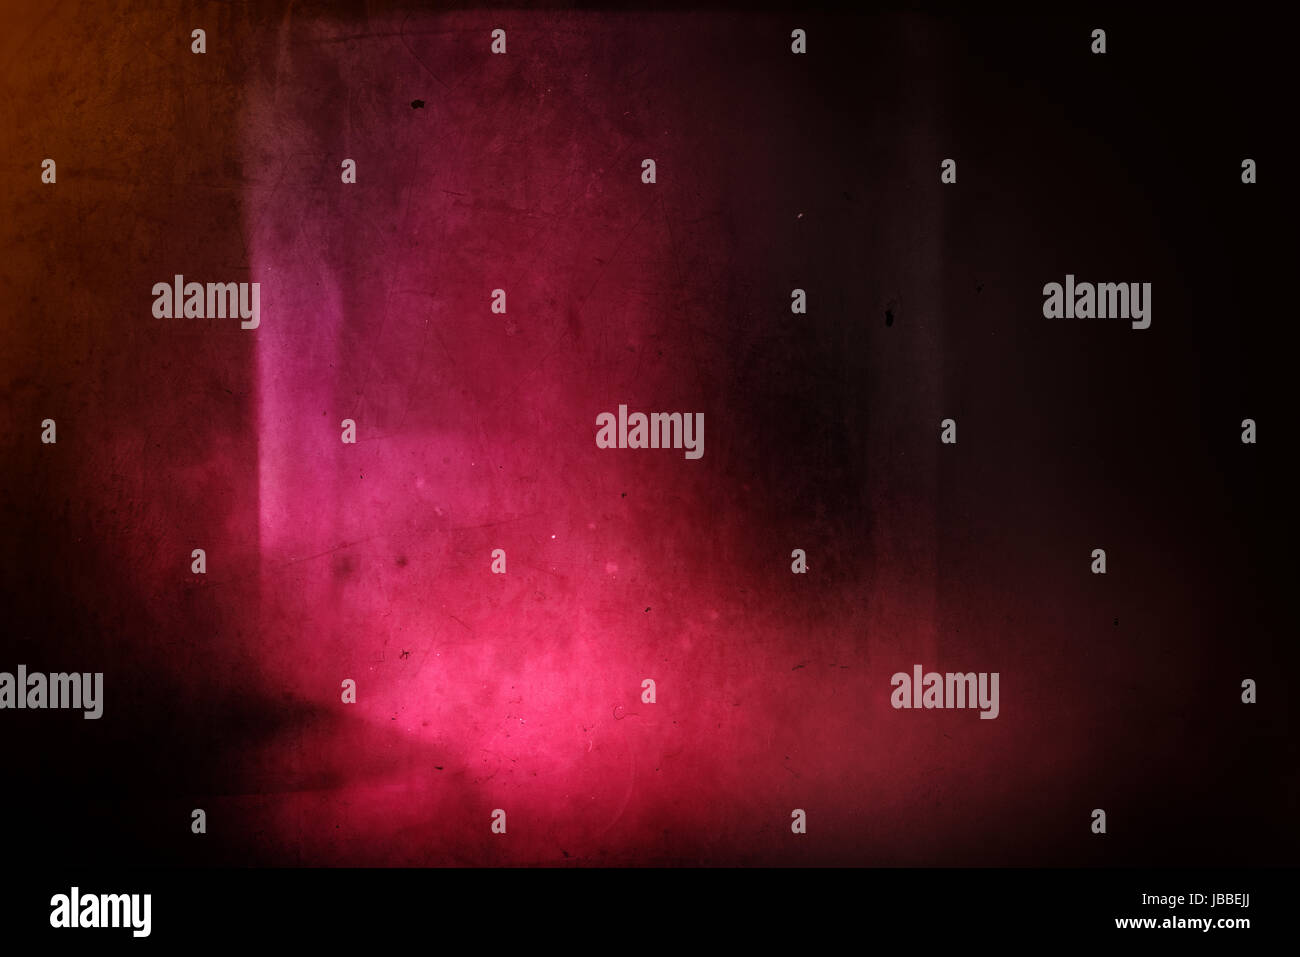 Abstract Grunge Hintergrund - Staub, Kratzer, Schmutz, Lärm, light Leaks und Grunge Texturen Stockfoto